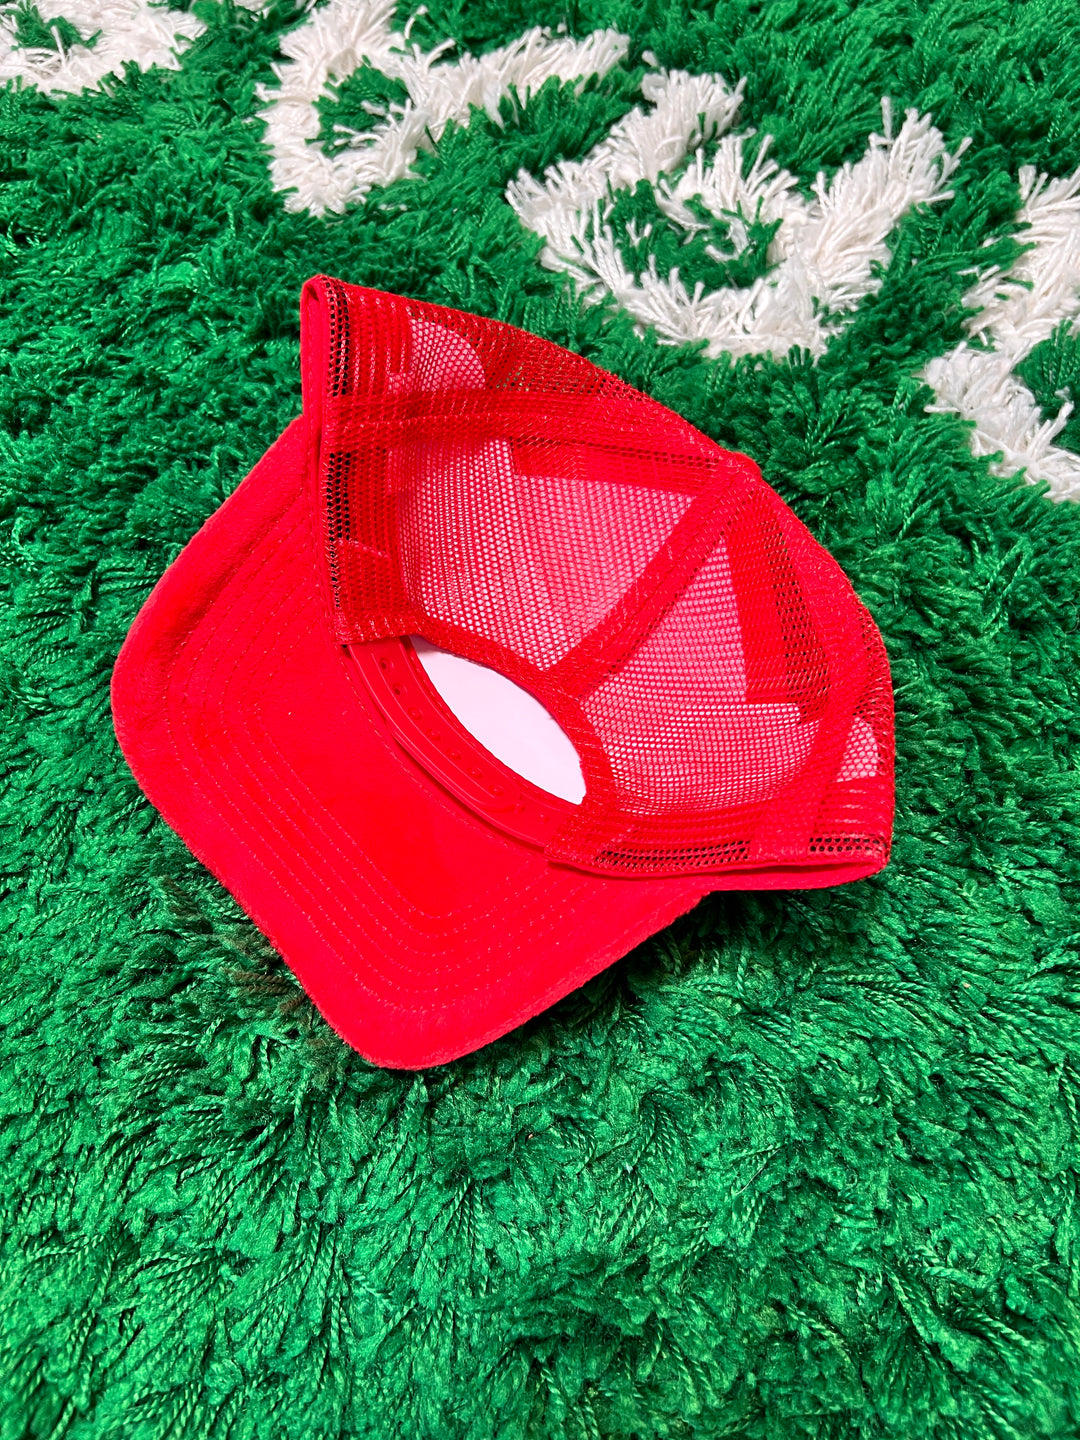 Red Velvet Trucker Hats